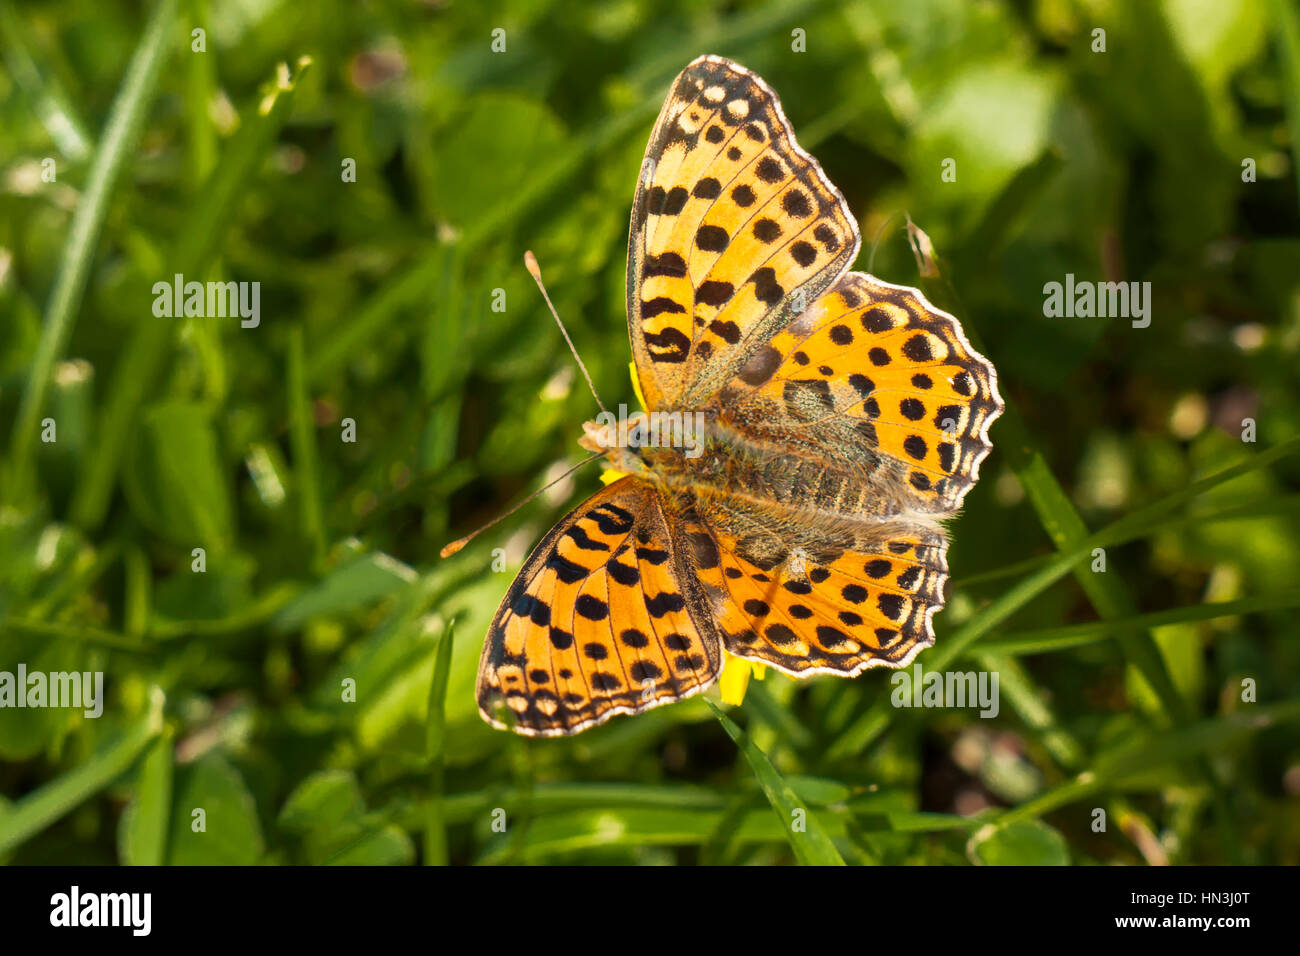 Reina de España Speyeria Issoria lathonia, mariposas, sentado sobre una brizna de hierba con las alas abiertas Foto de stock